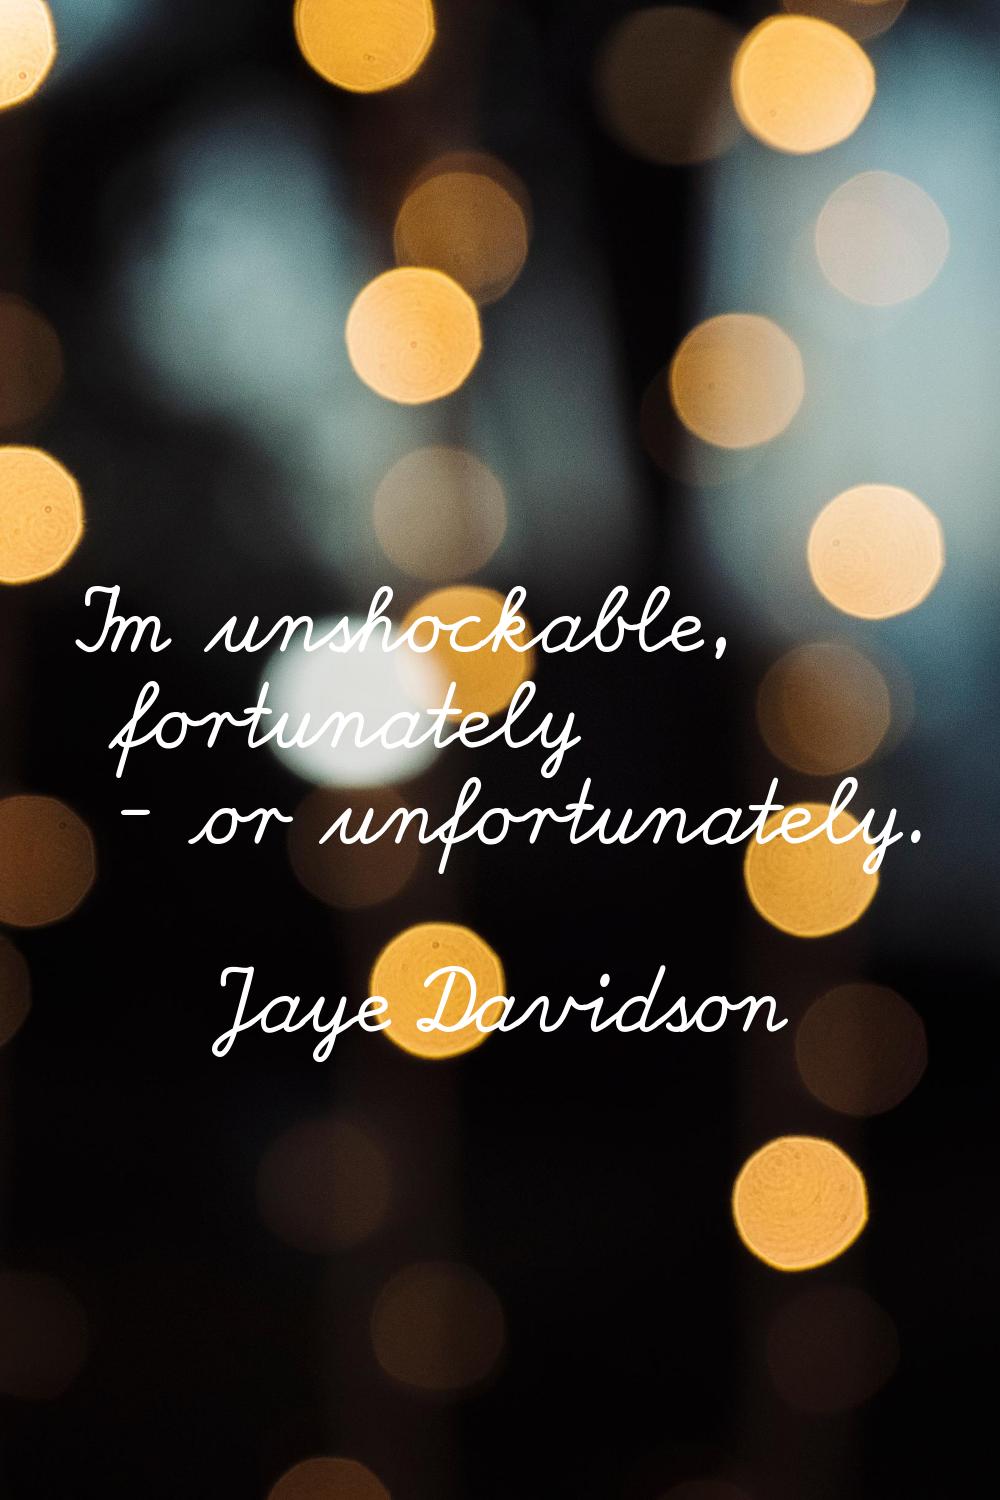 I'm unshockable, fortunately - or unfortunately.